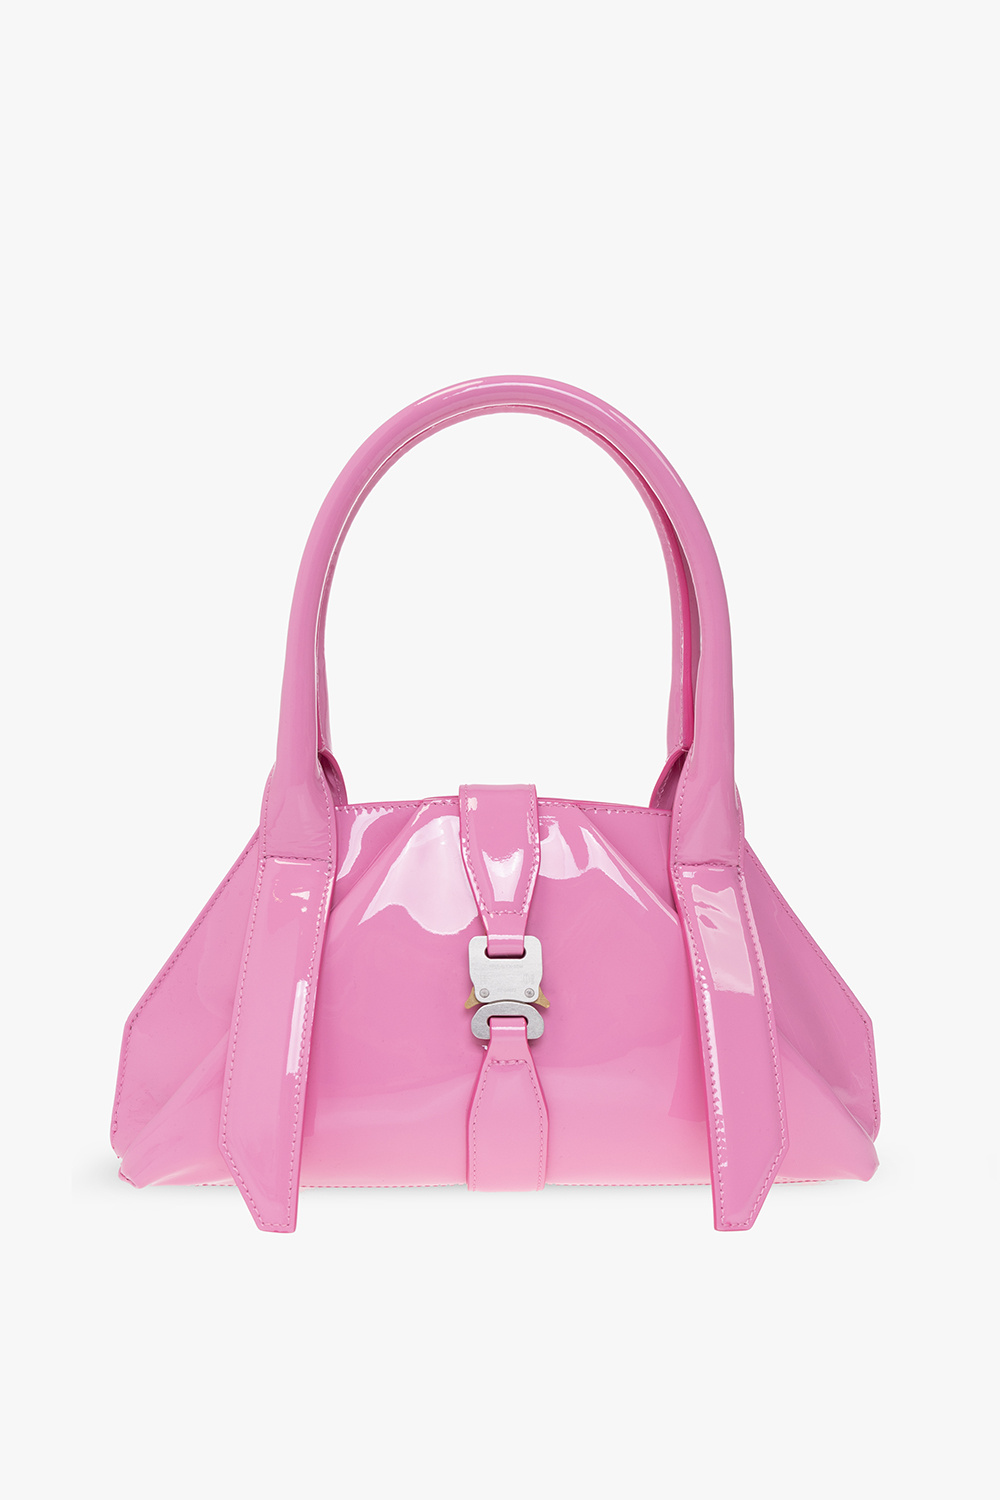 Pink Glossy handbag 1017 ALYX 9SM - Vitkac GB